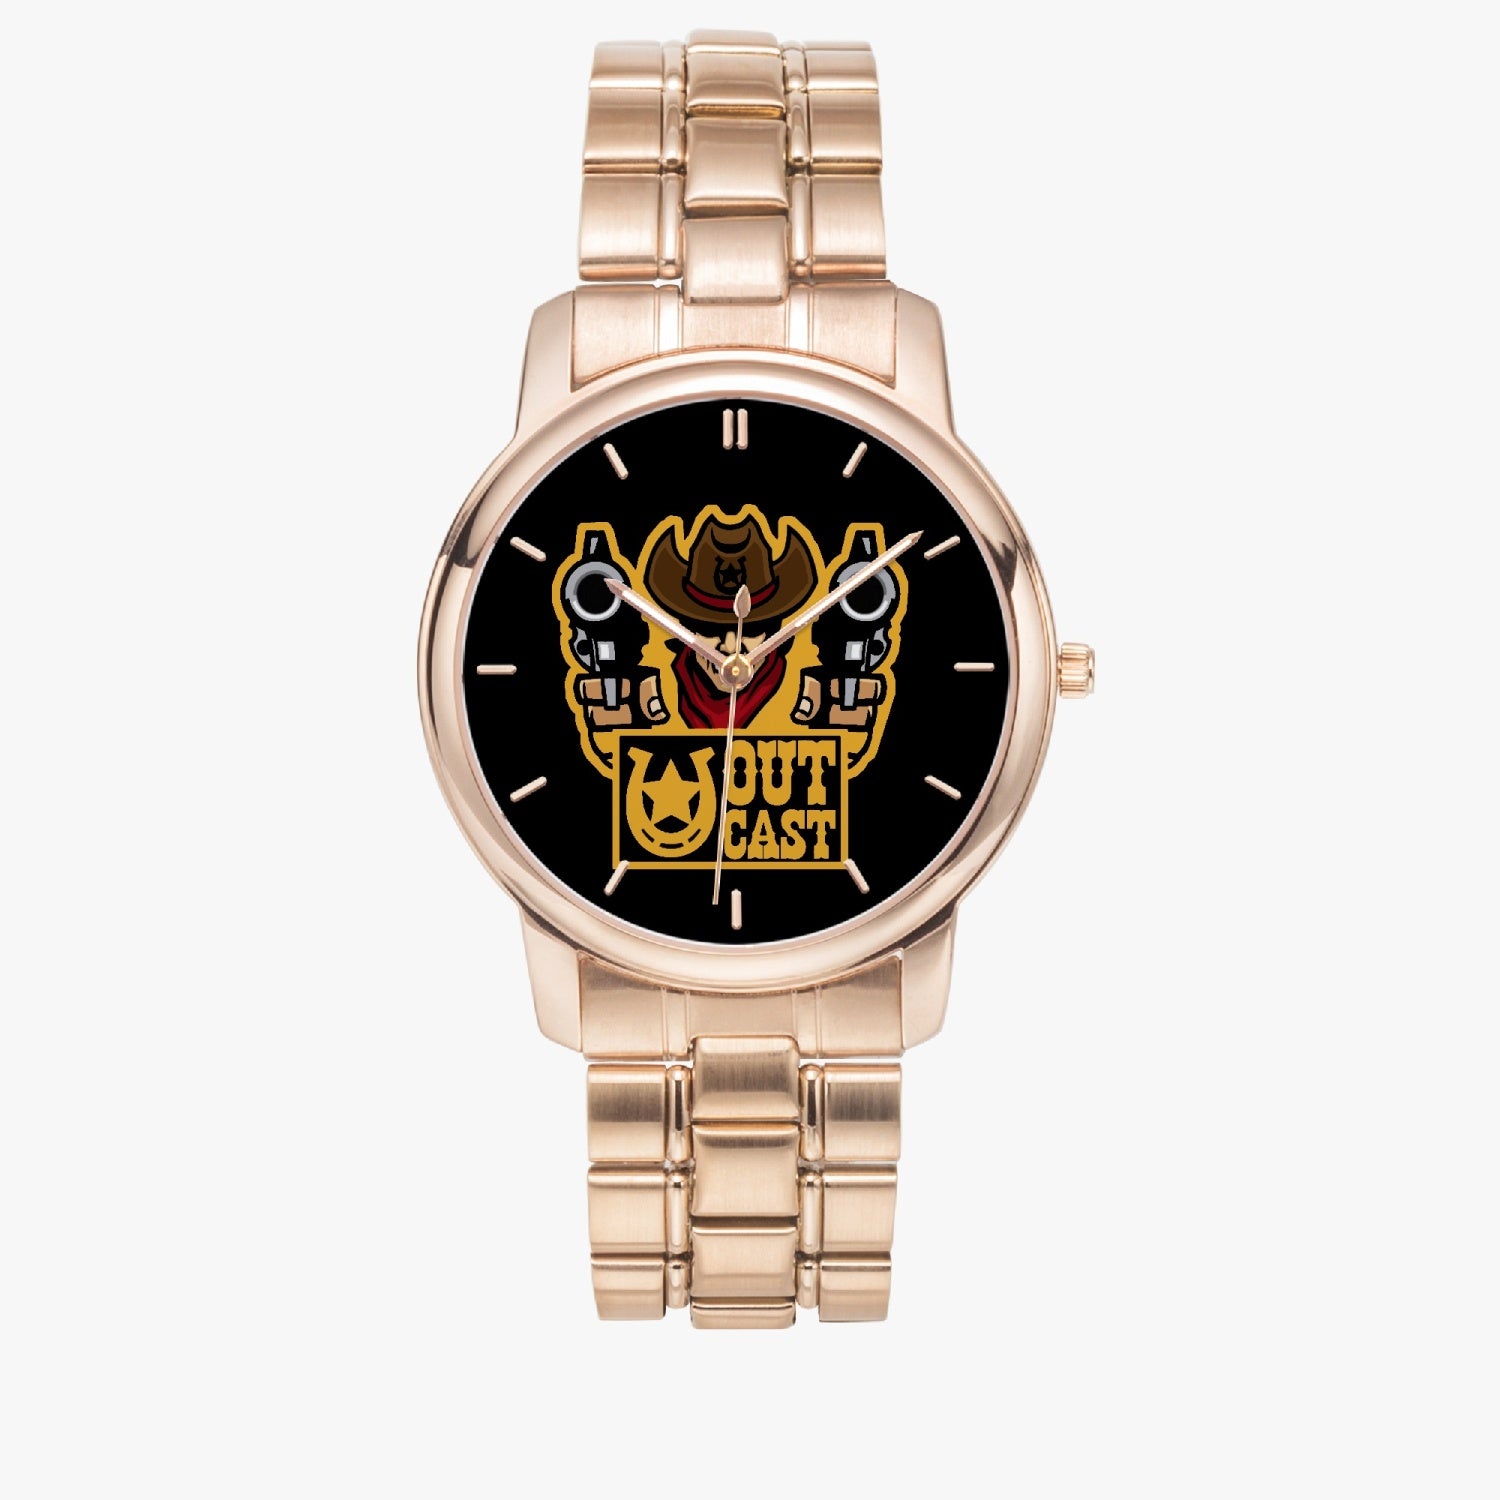 ocv Stainless Steel Quartz Watch